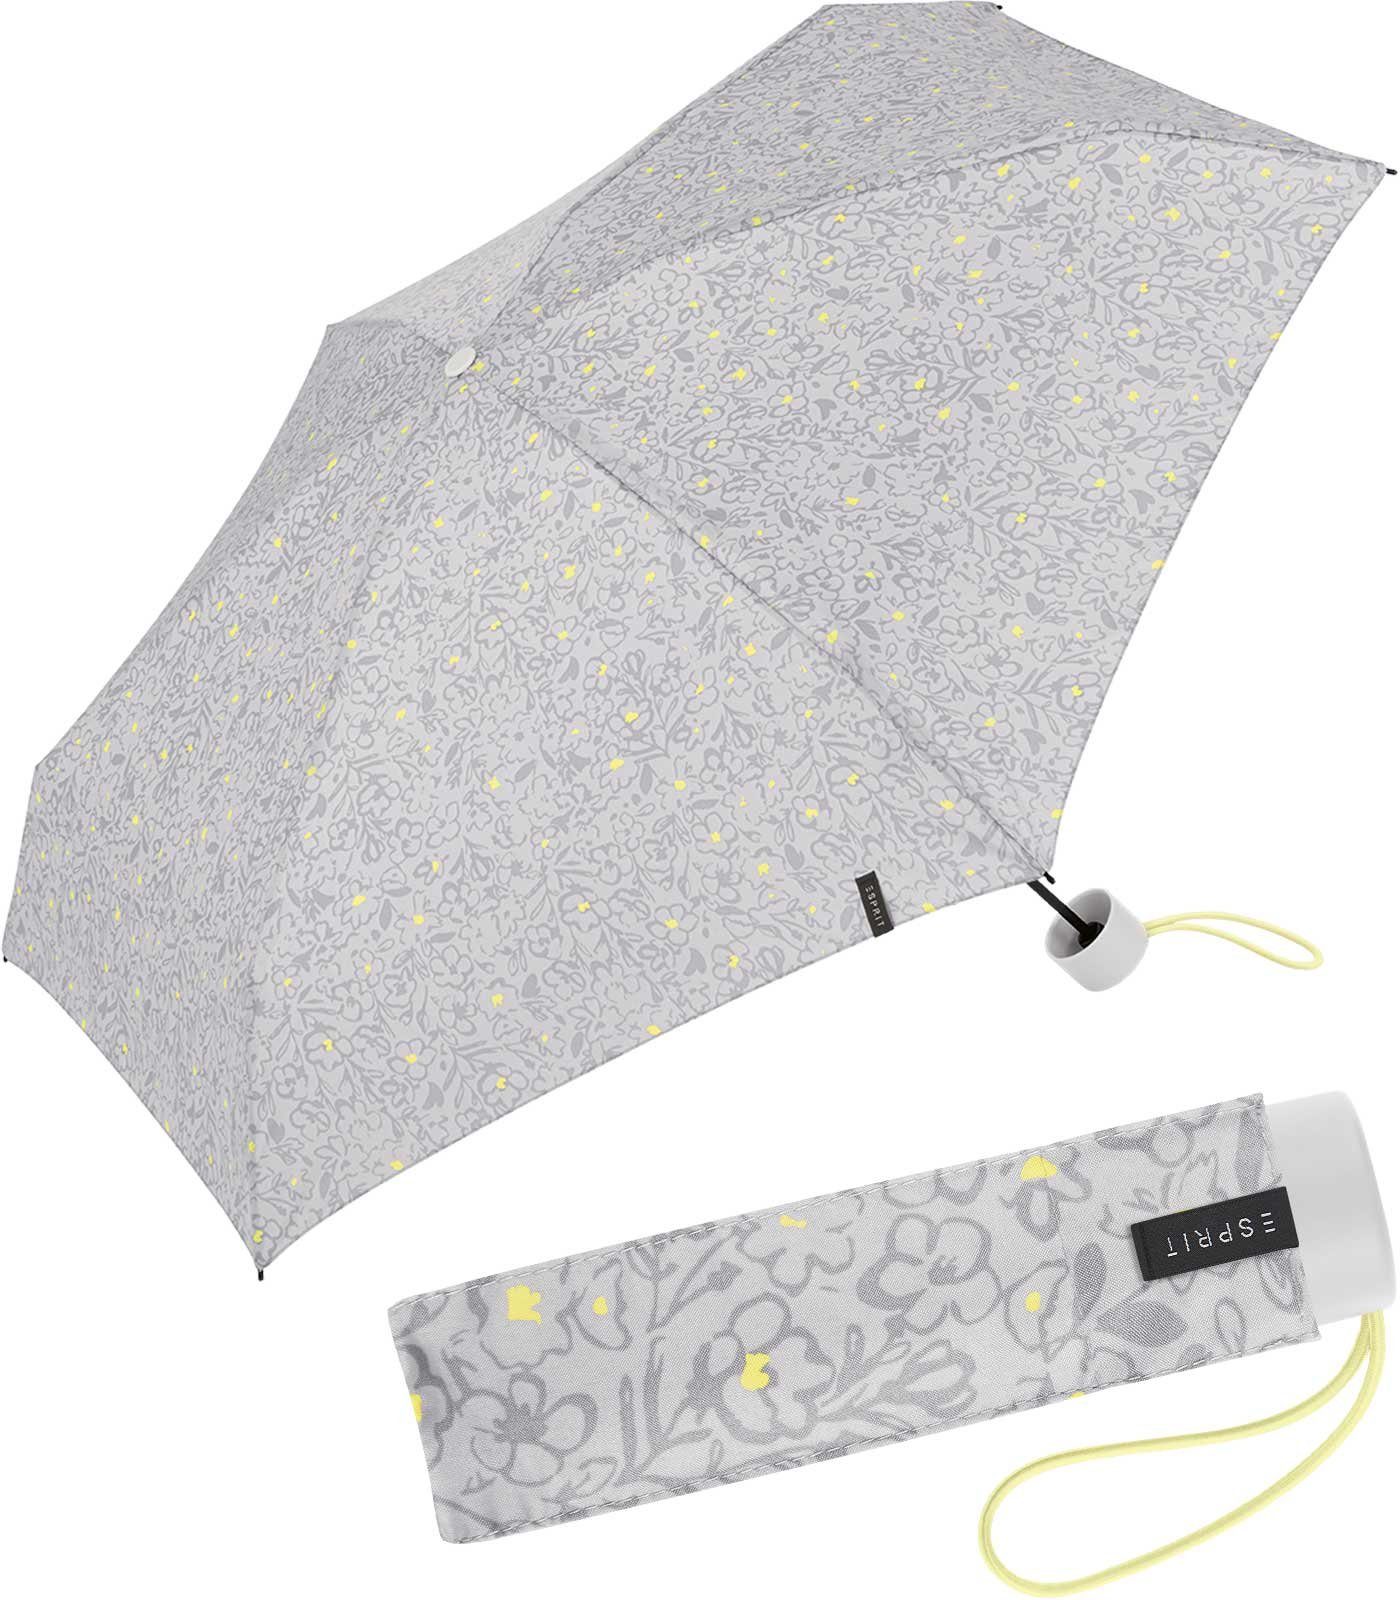 Esprit Taschenregenschirm Damen Super Mini Petito - Scribbled Romance, mit romantischem Blüten-Muster grau